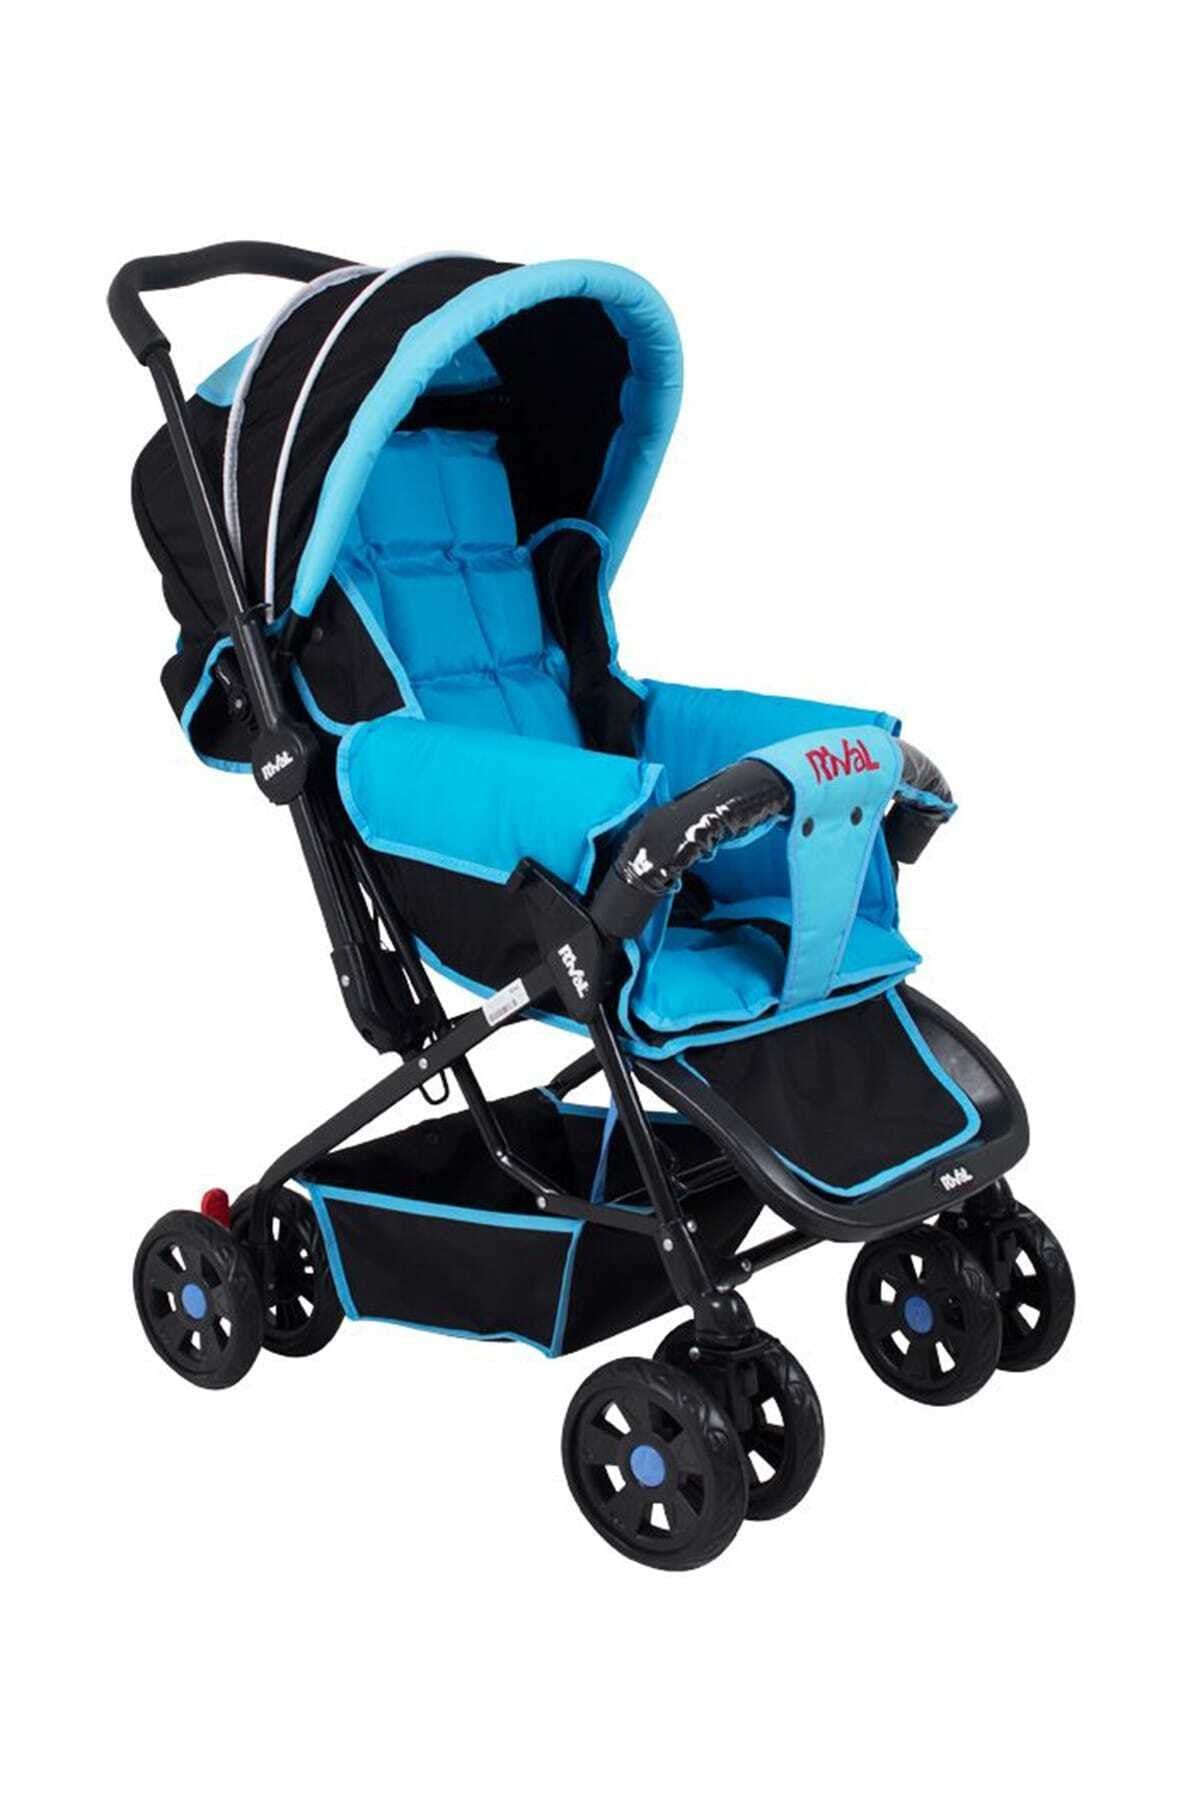 Rival Rv102 Lucıdo Çift Yönlü Bebek Arabası Mavi Siyah